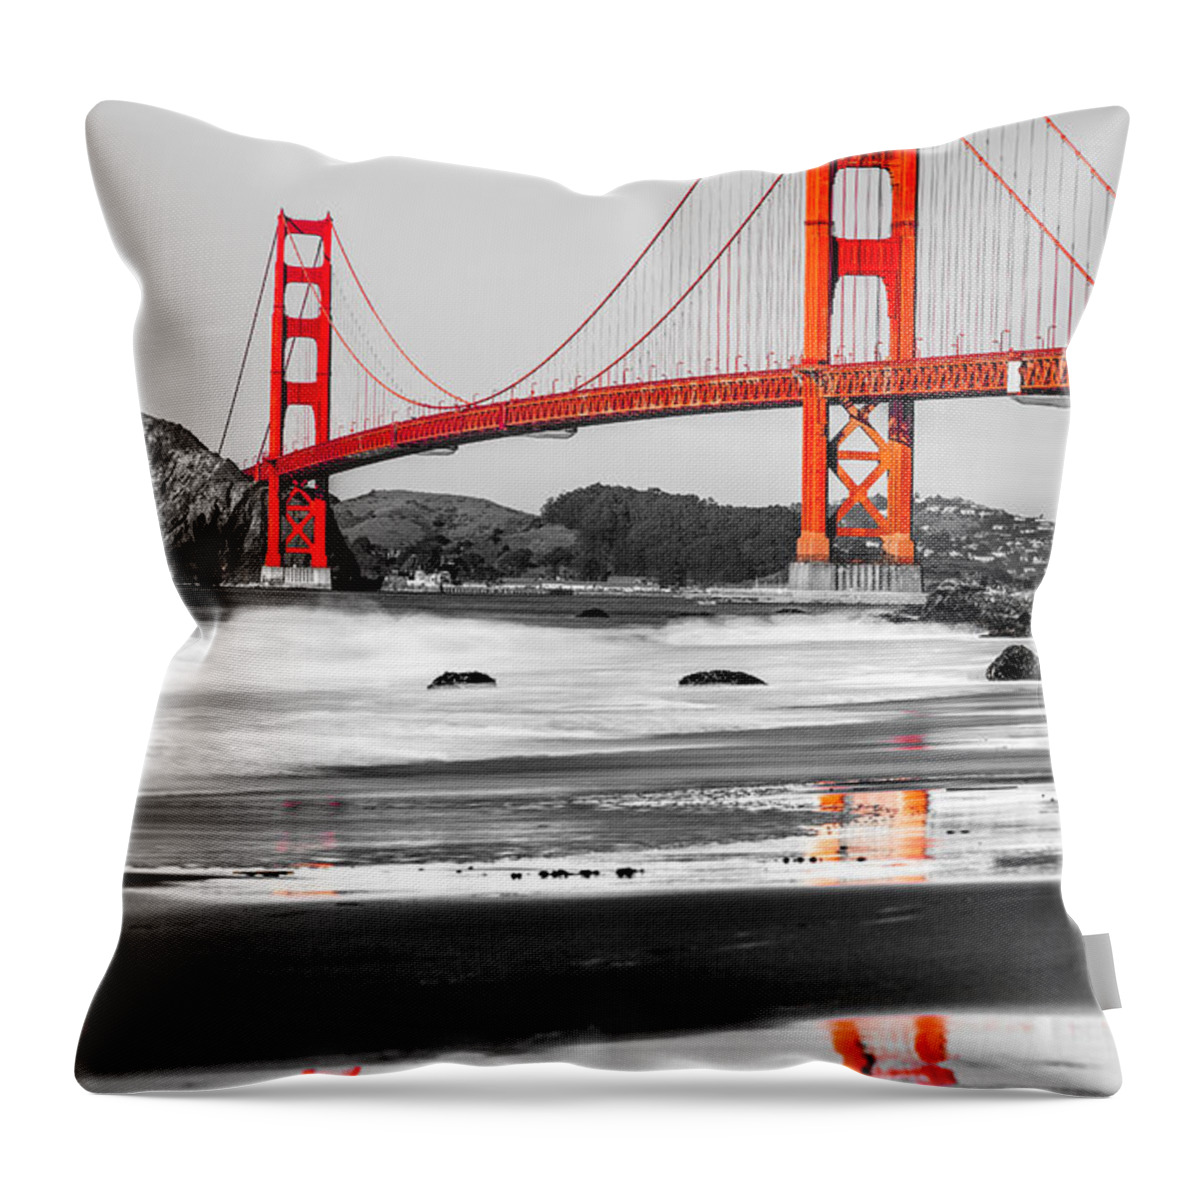 Francisco Throw Pillow featuring the photograph Golden Gate - San Francisco - California - USA #1 by Luciano Mortula